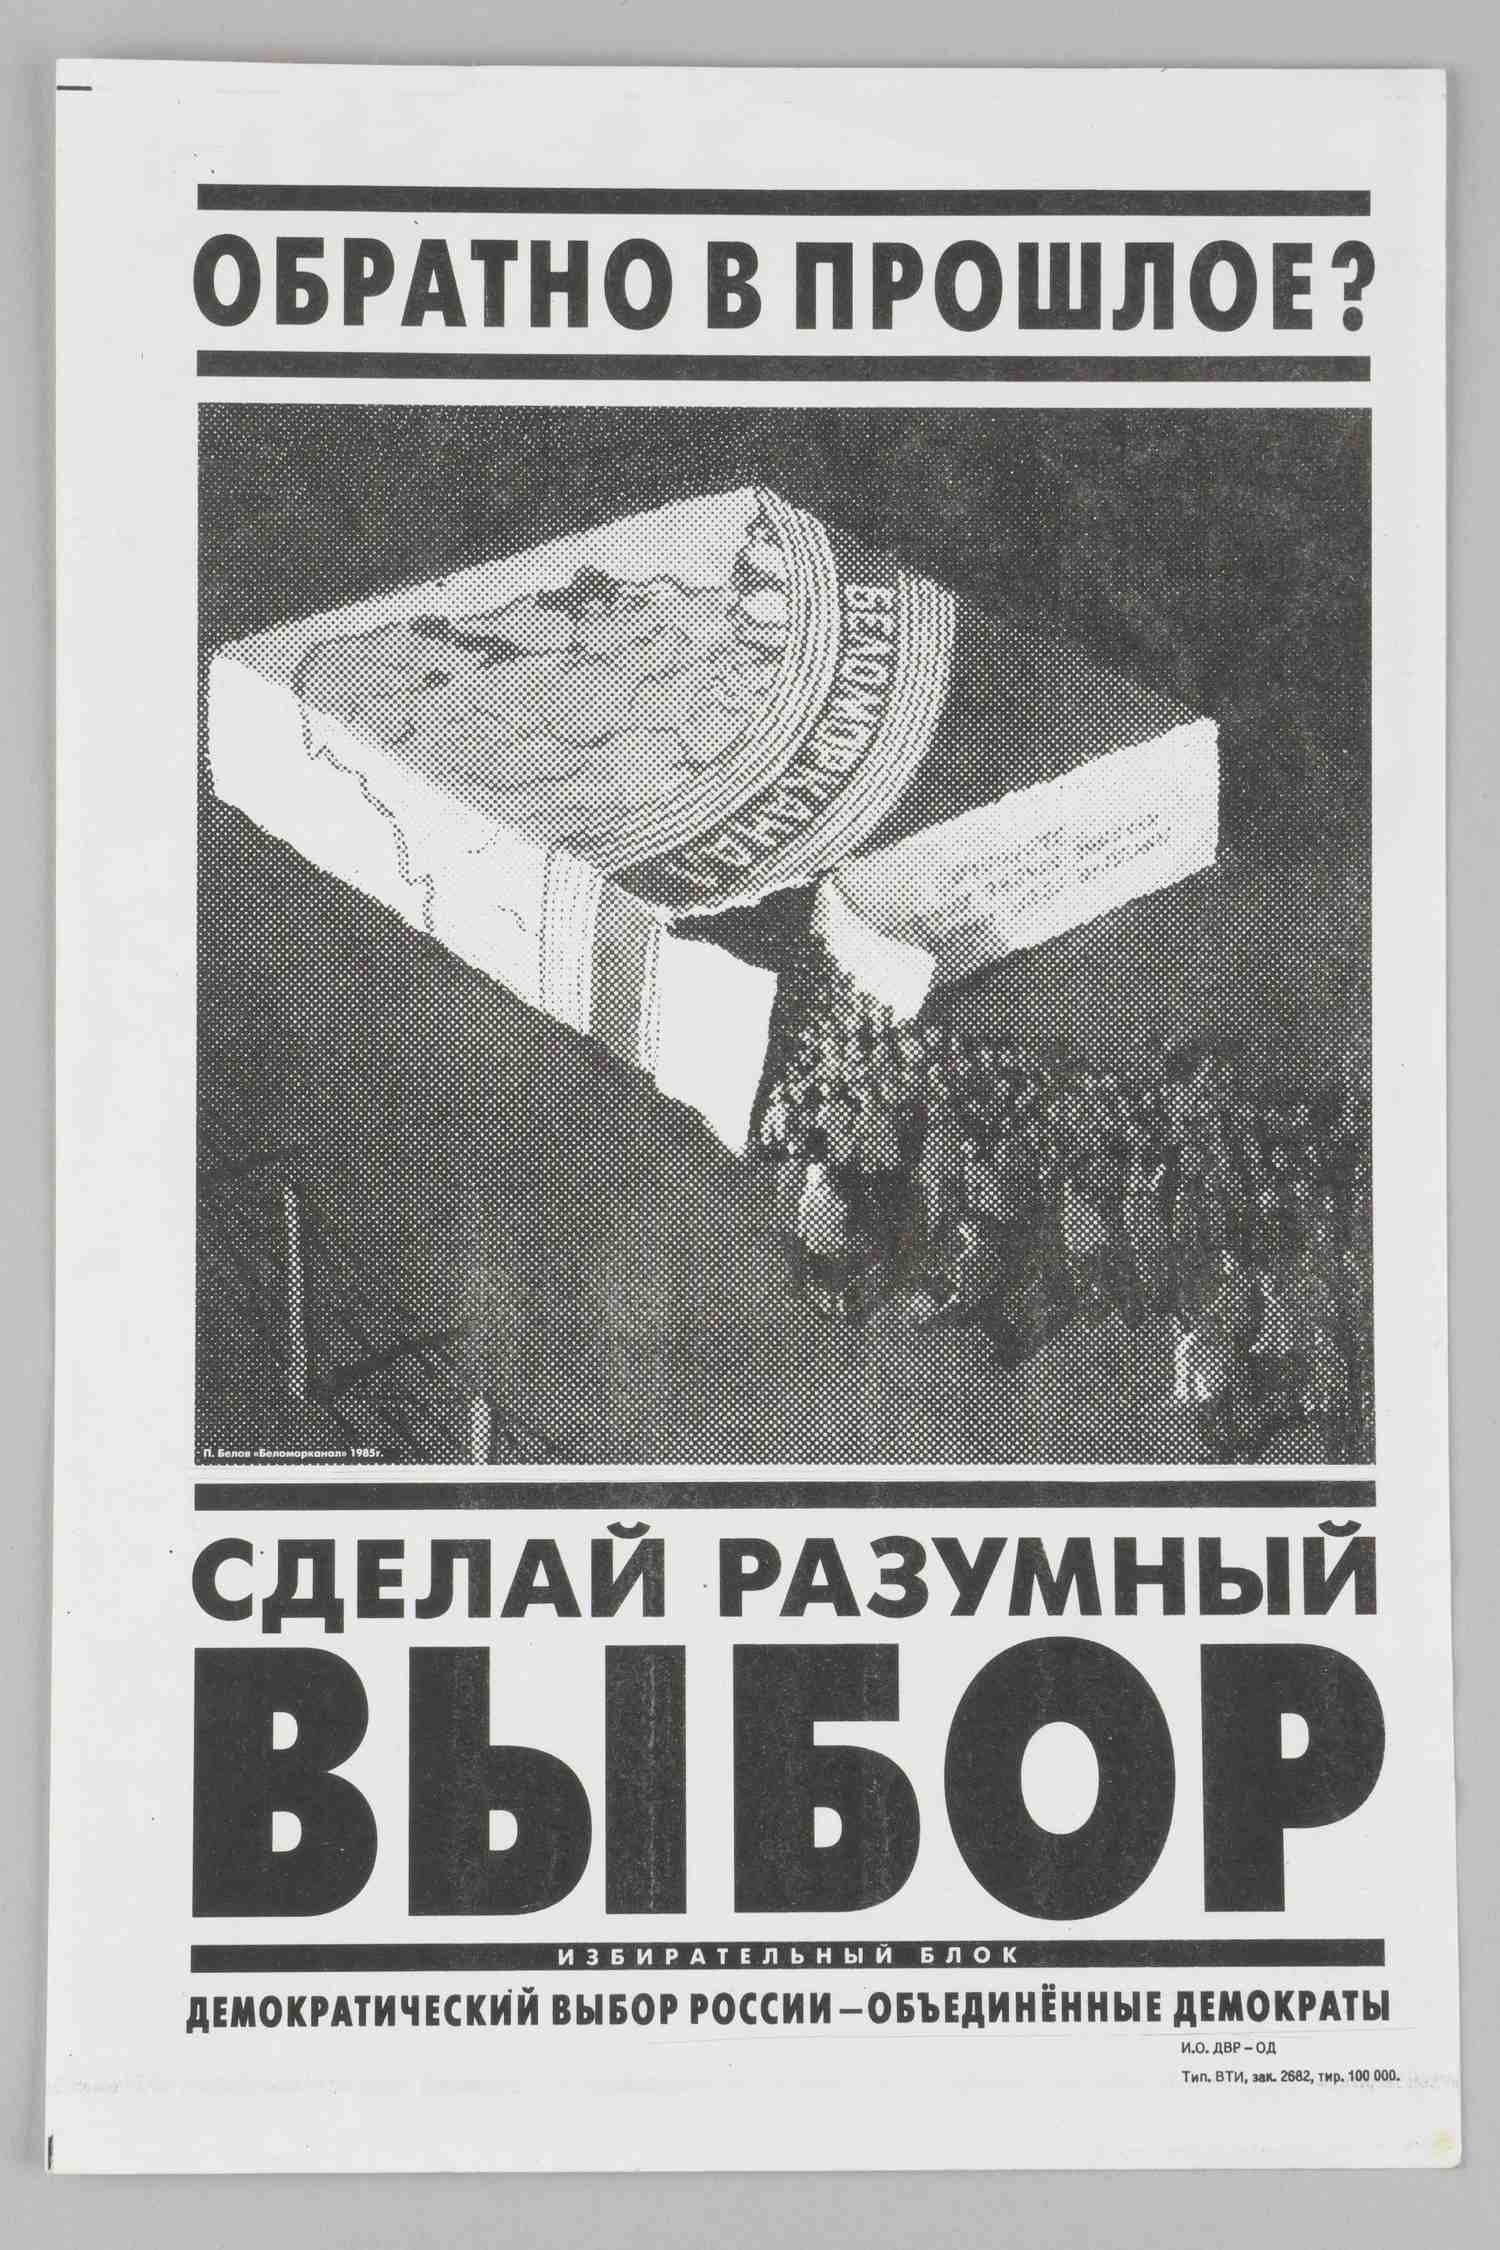 Листовка в поддержку избирательного блока «Демократический выбор России» на выборах в Государственную Думу 1993 года.